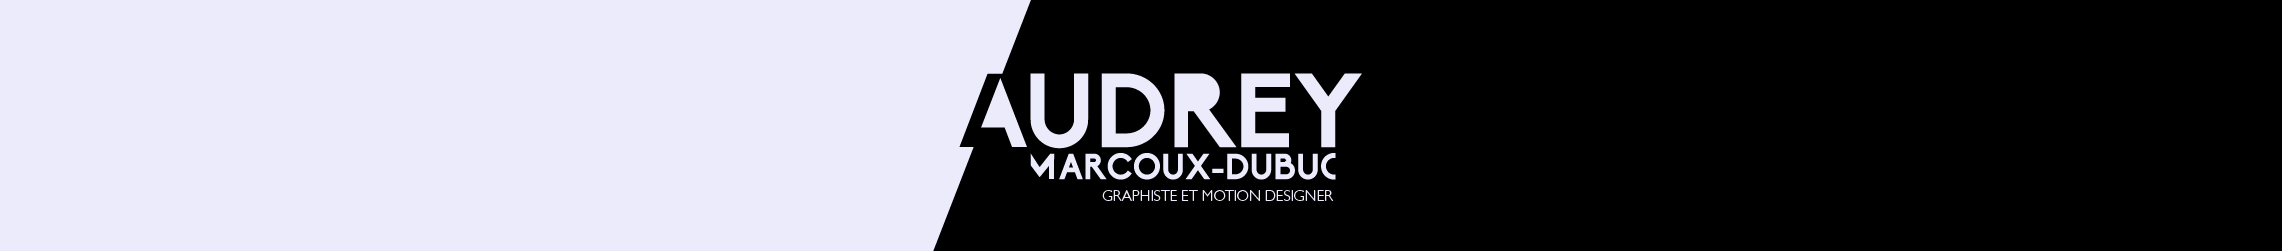 Audrey Marcoux-Dubuc's profile banner